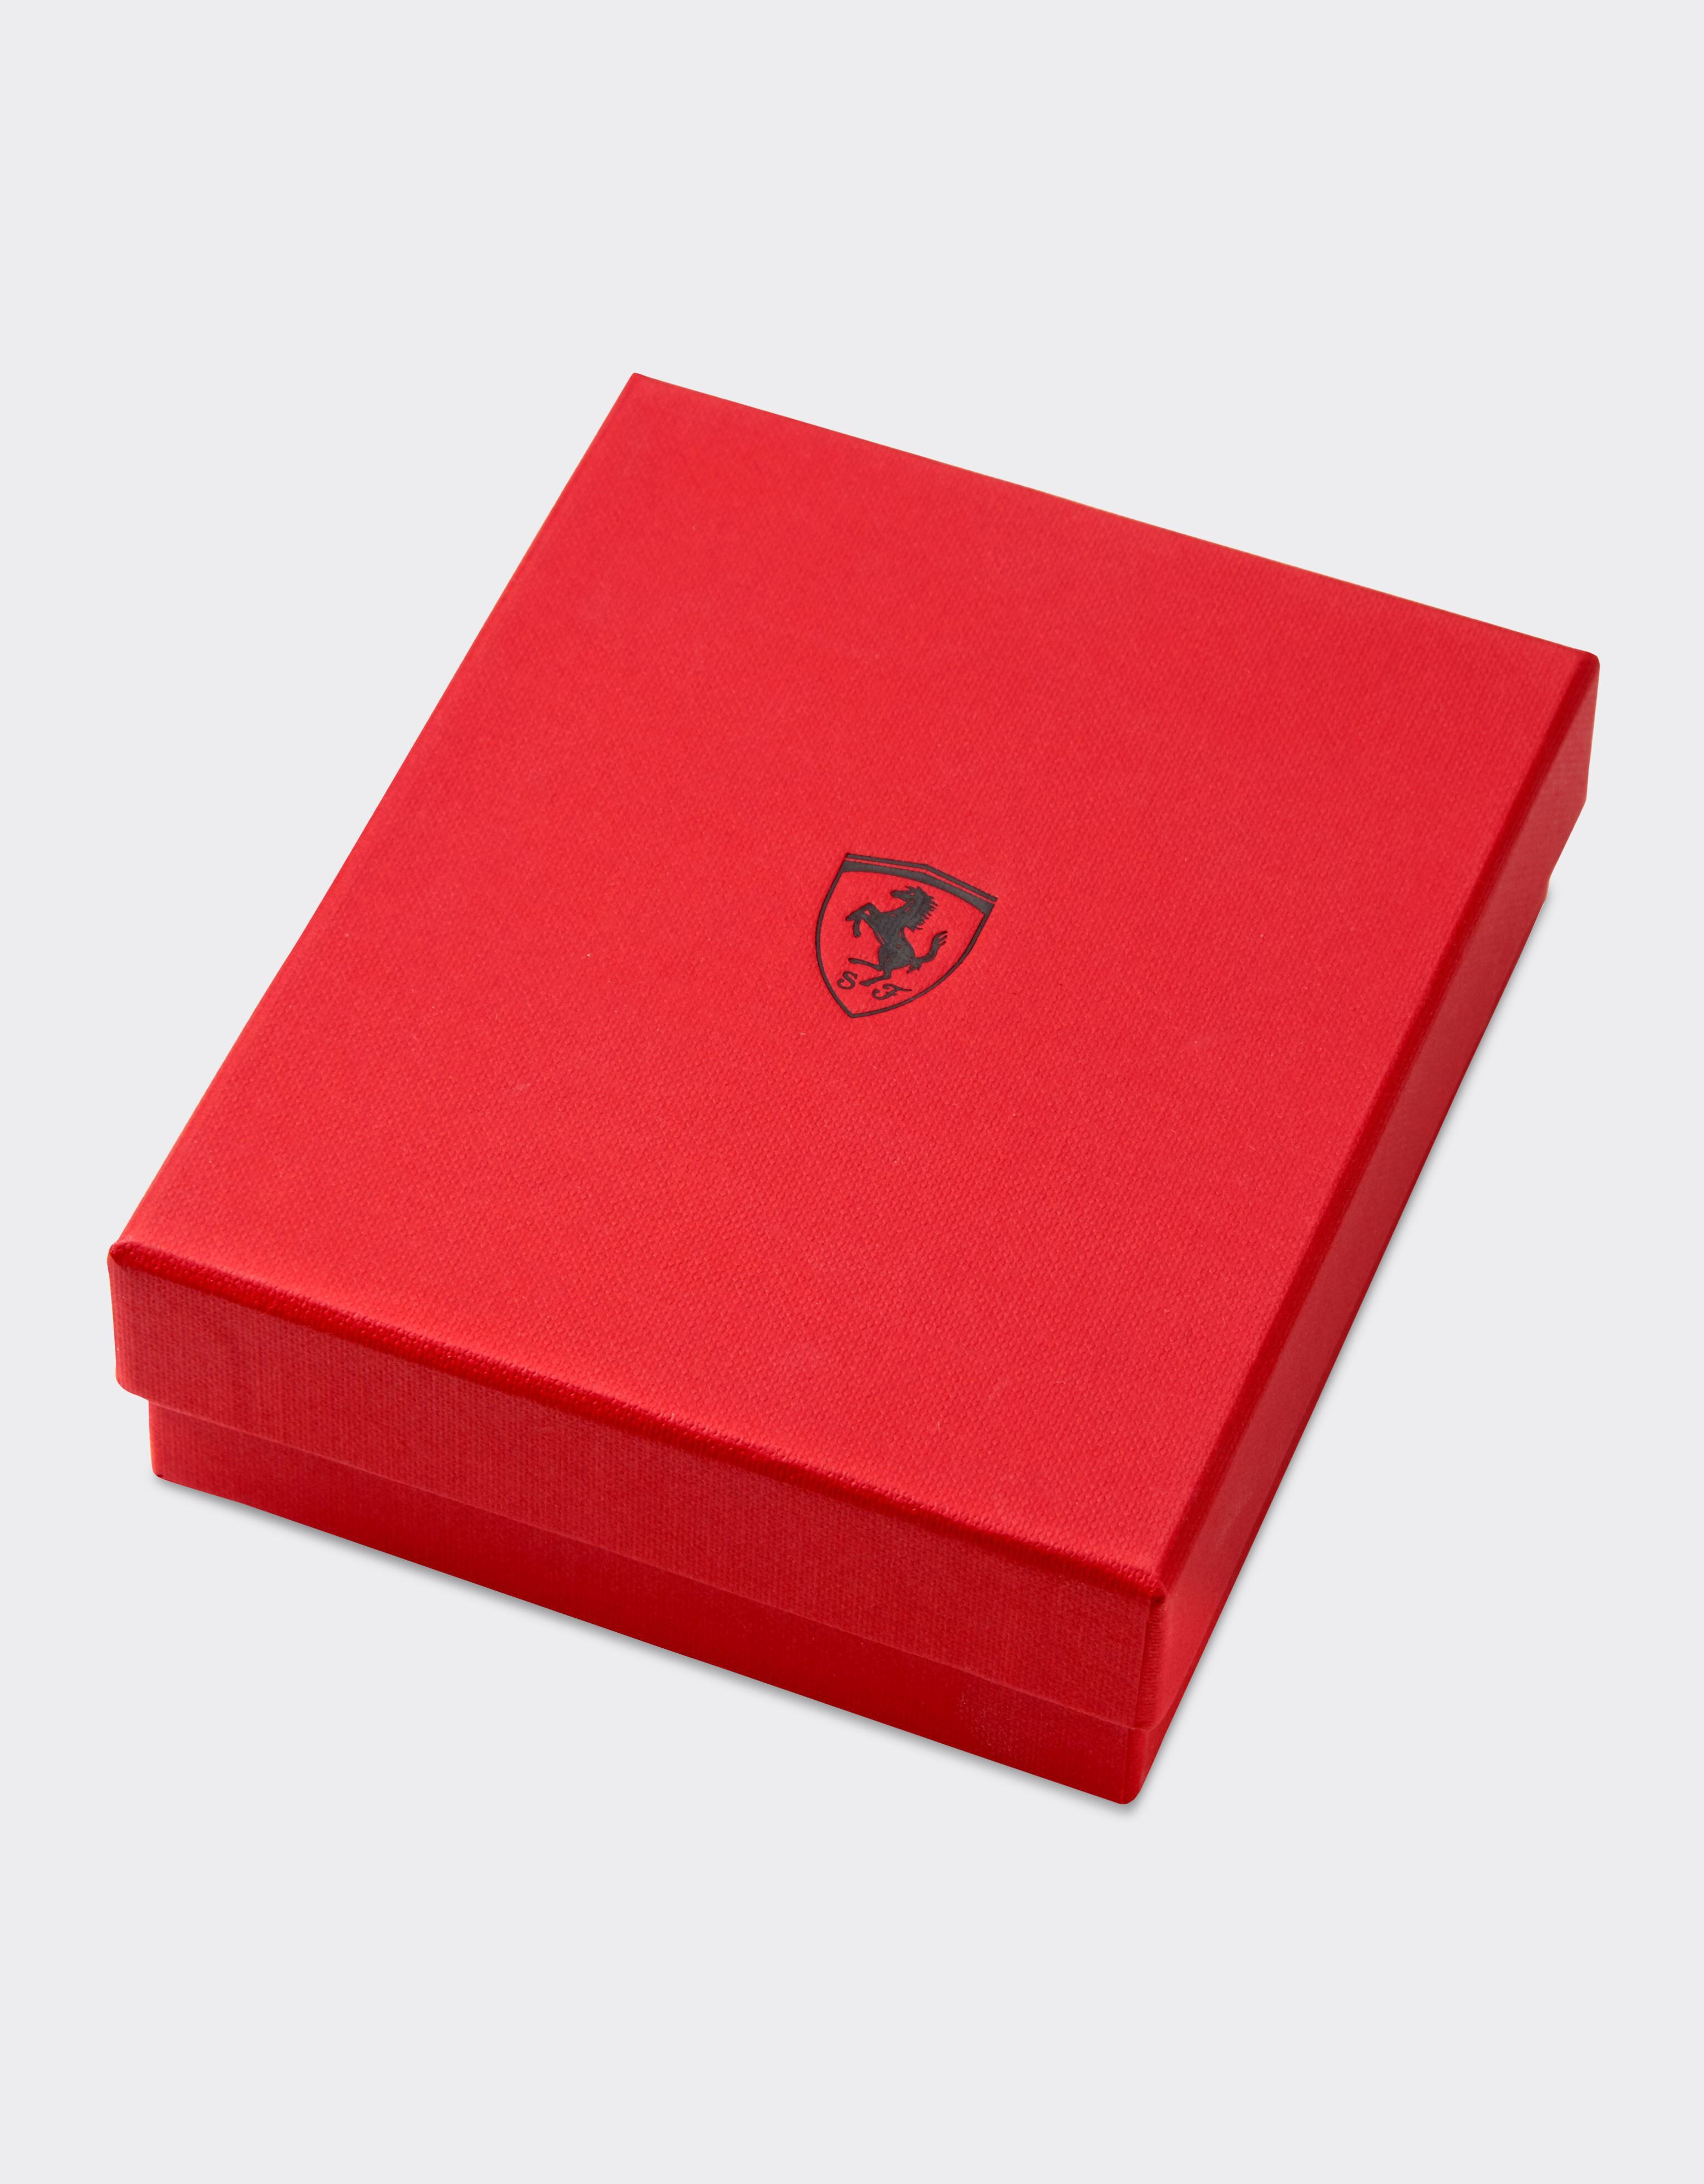 Ferrari Oggetto da tavolo Second Life con Scudetto smaltato Made in Italy Giallo 47306f